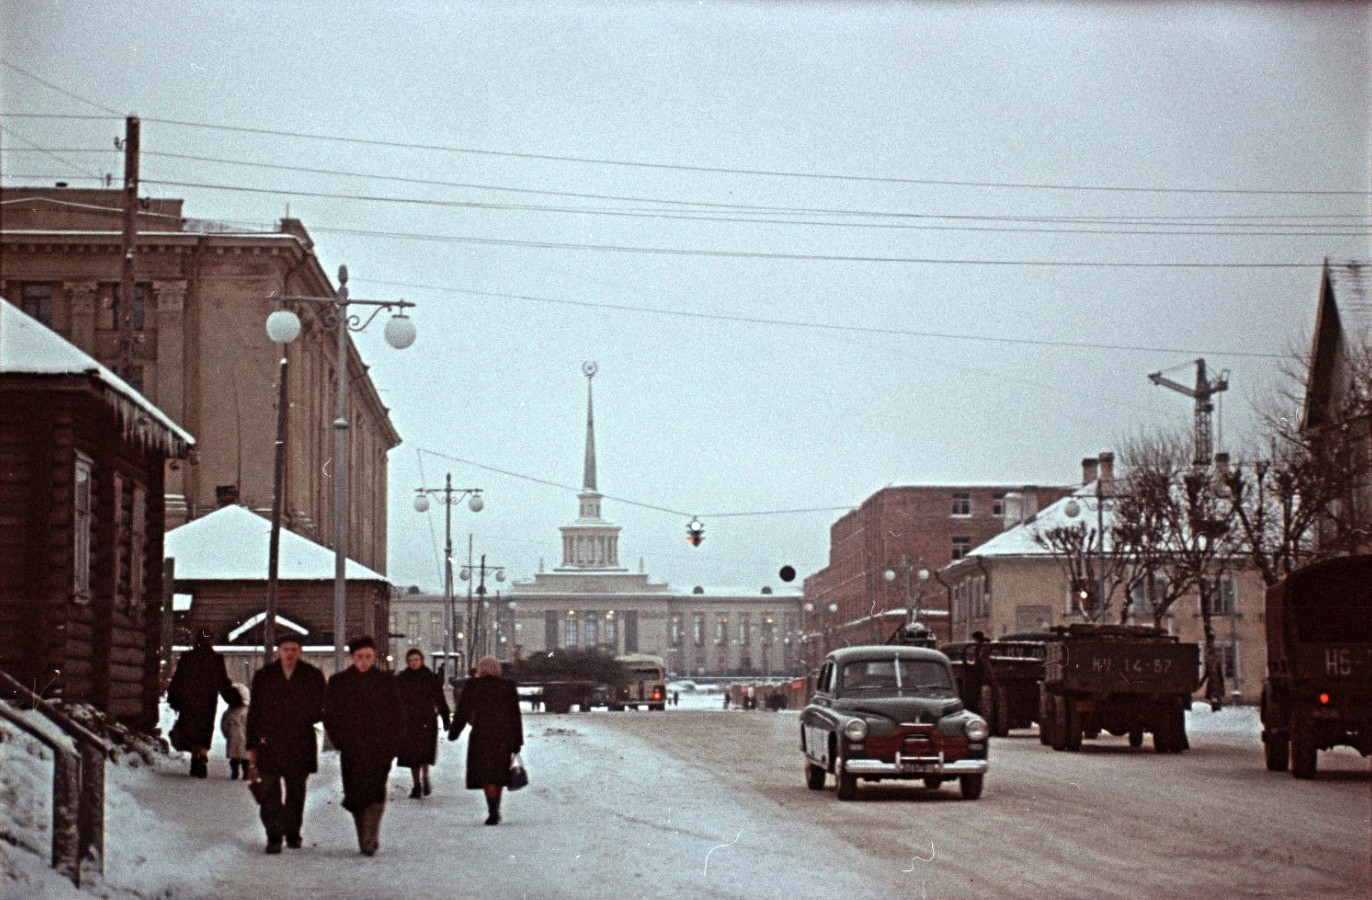 1957. Petrozavodsk. Building of Kareldrev Trust